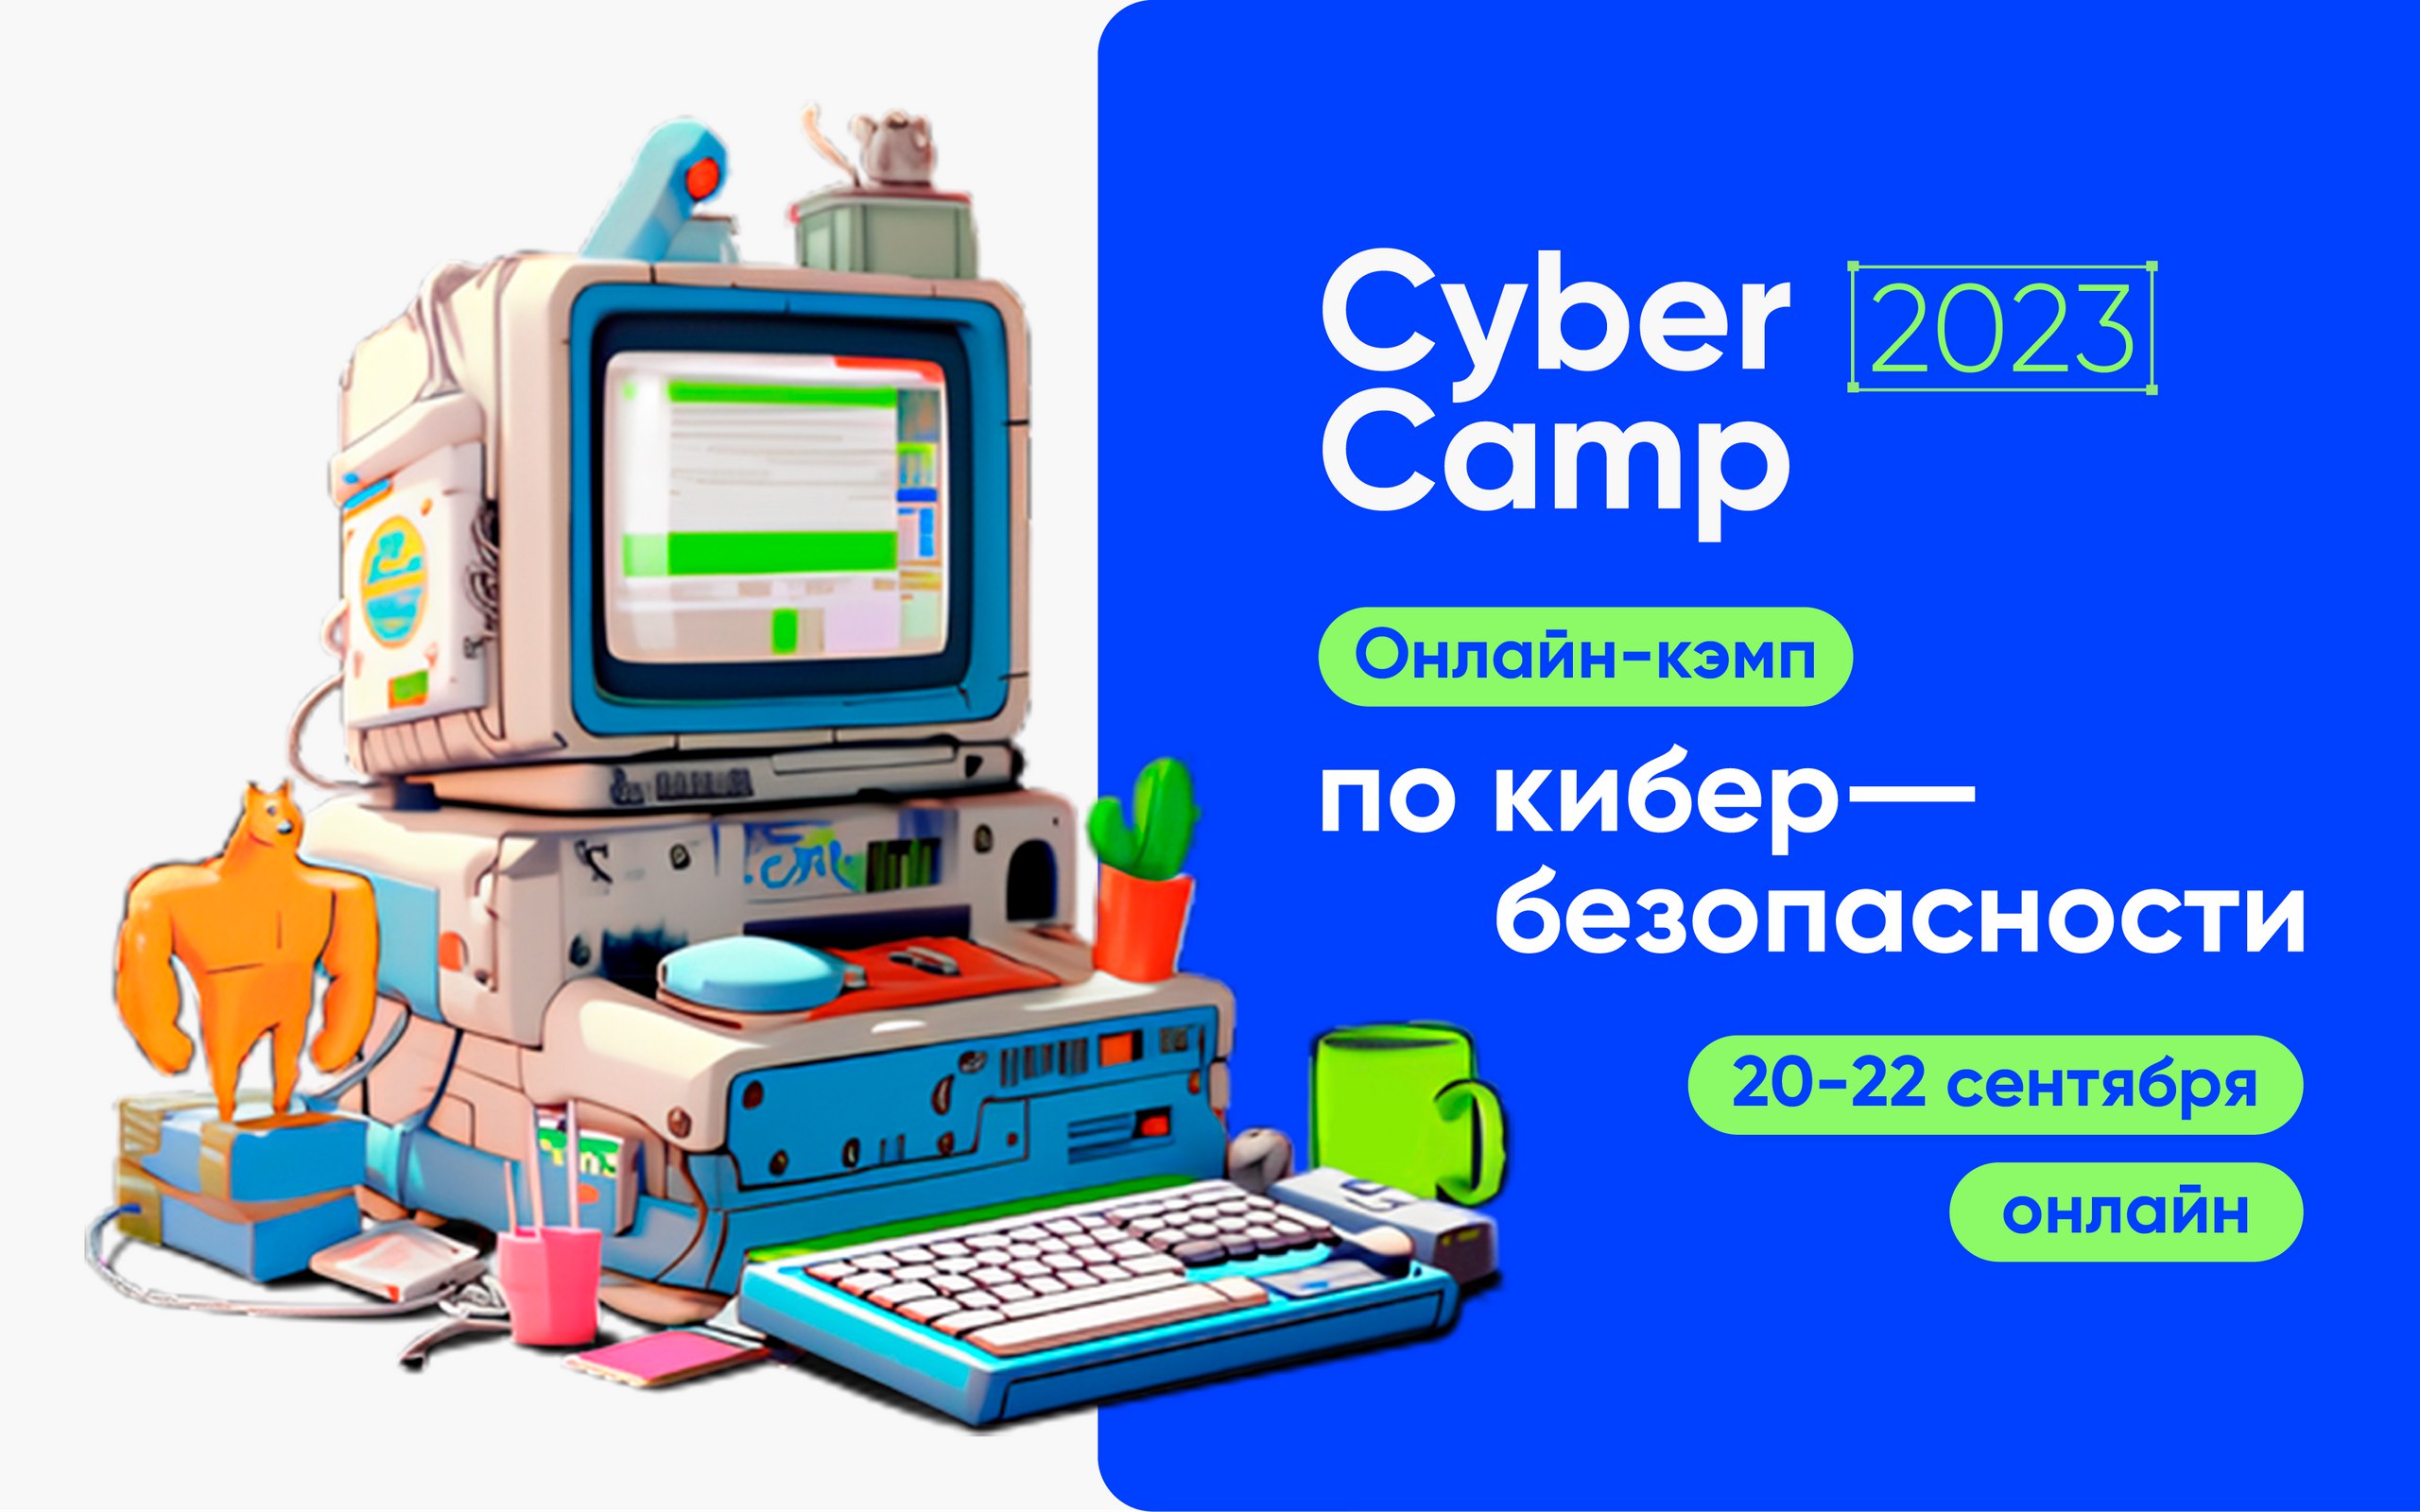 Онлайн-кэмп по практической безопасности CyberCamp 2023 состоится 20-22 сентября